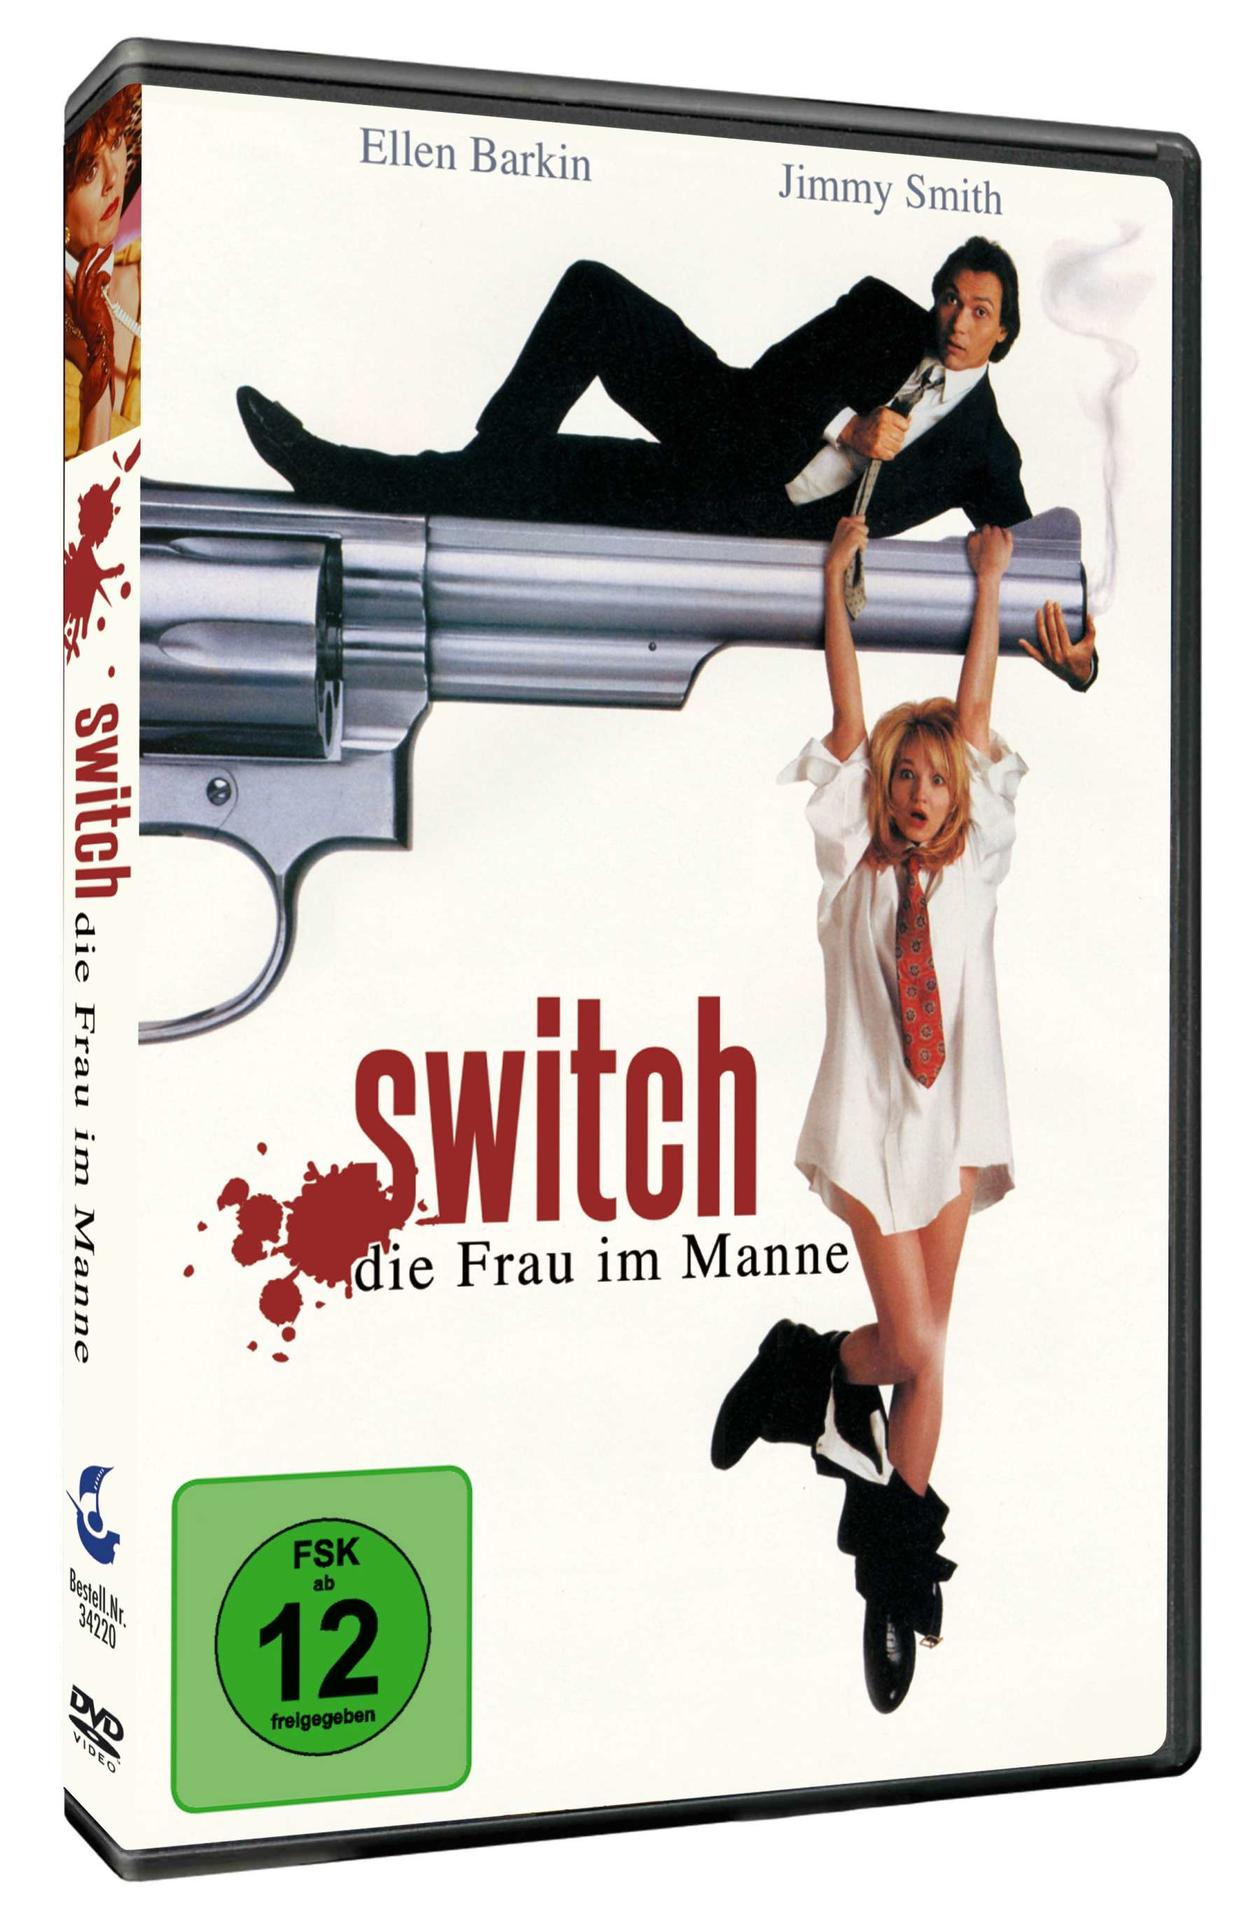 DVD DIE MANNE FRAU - SWITCH IM